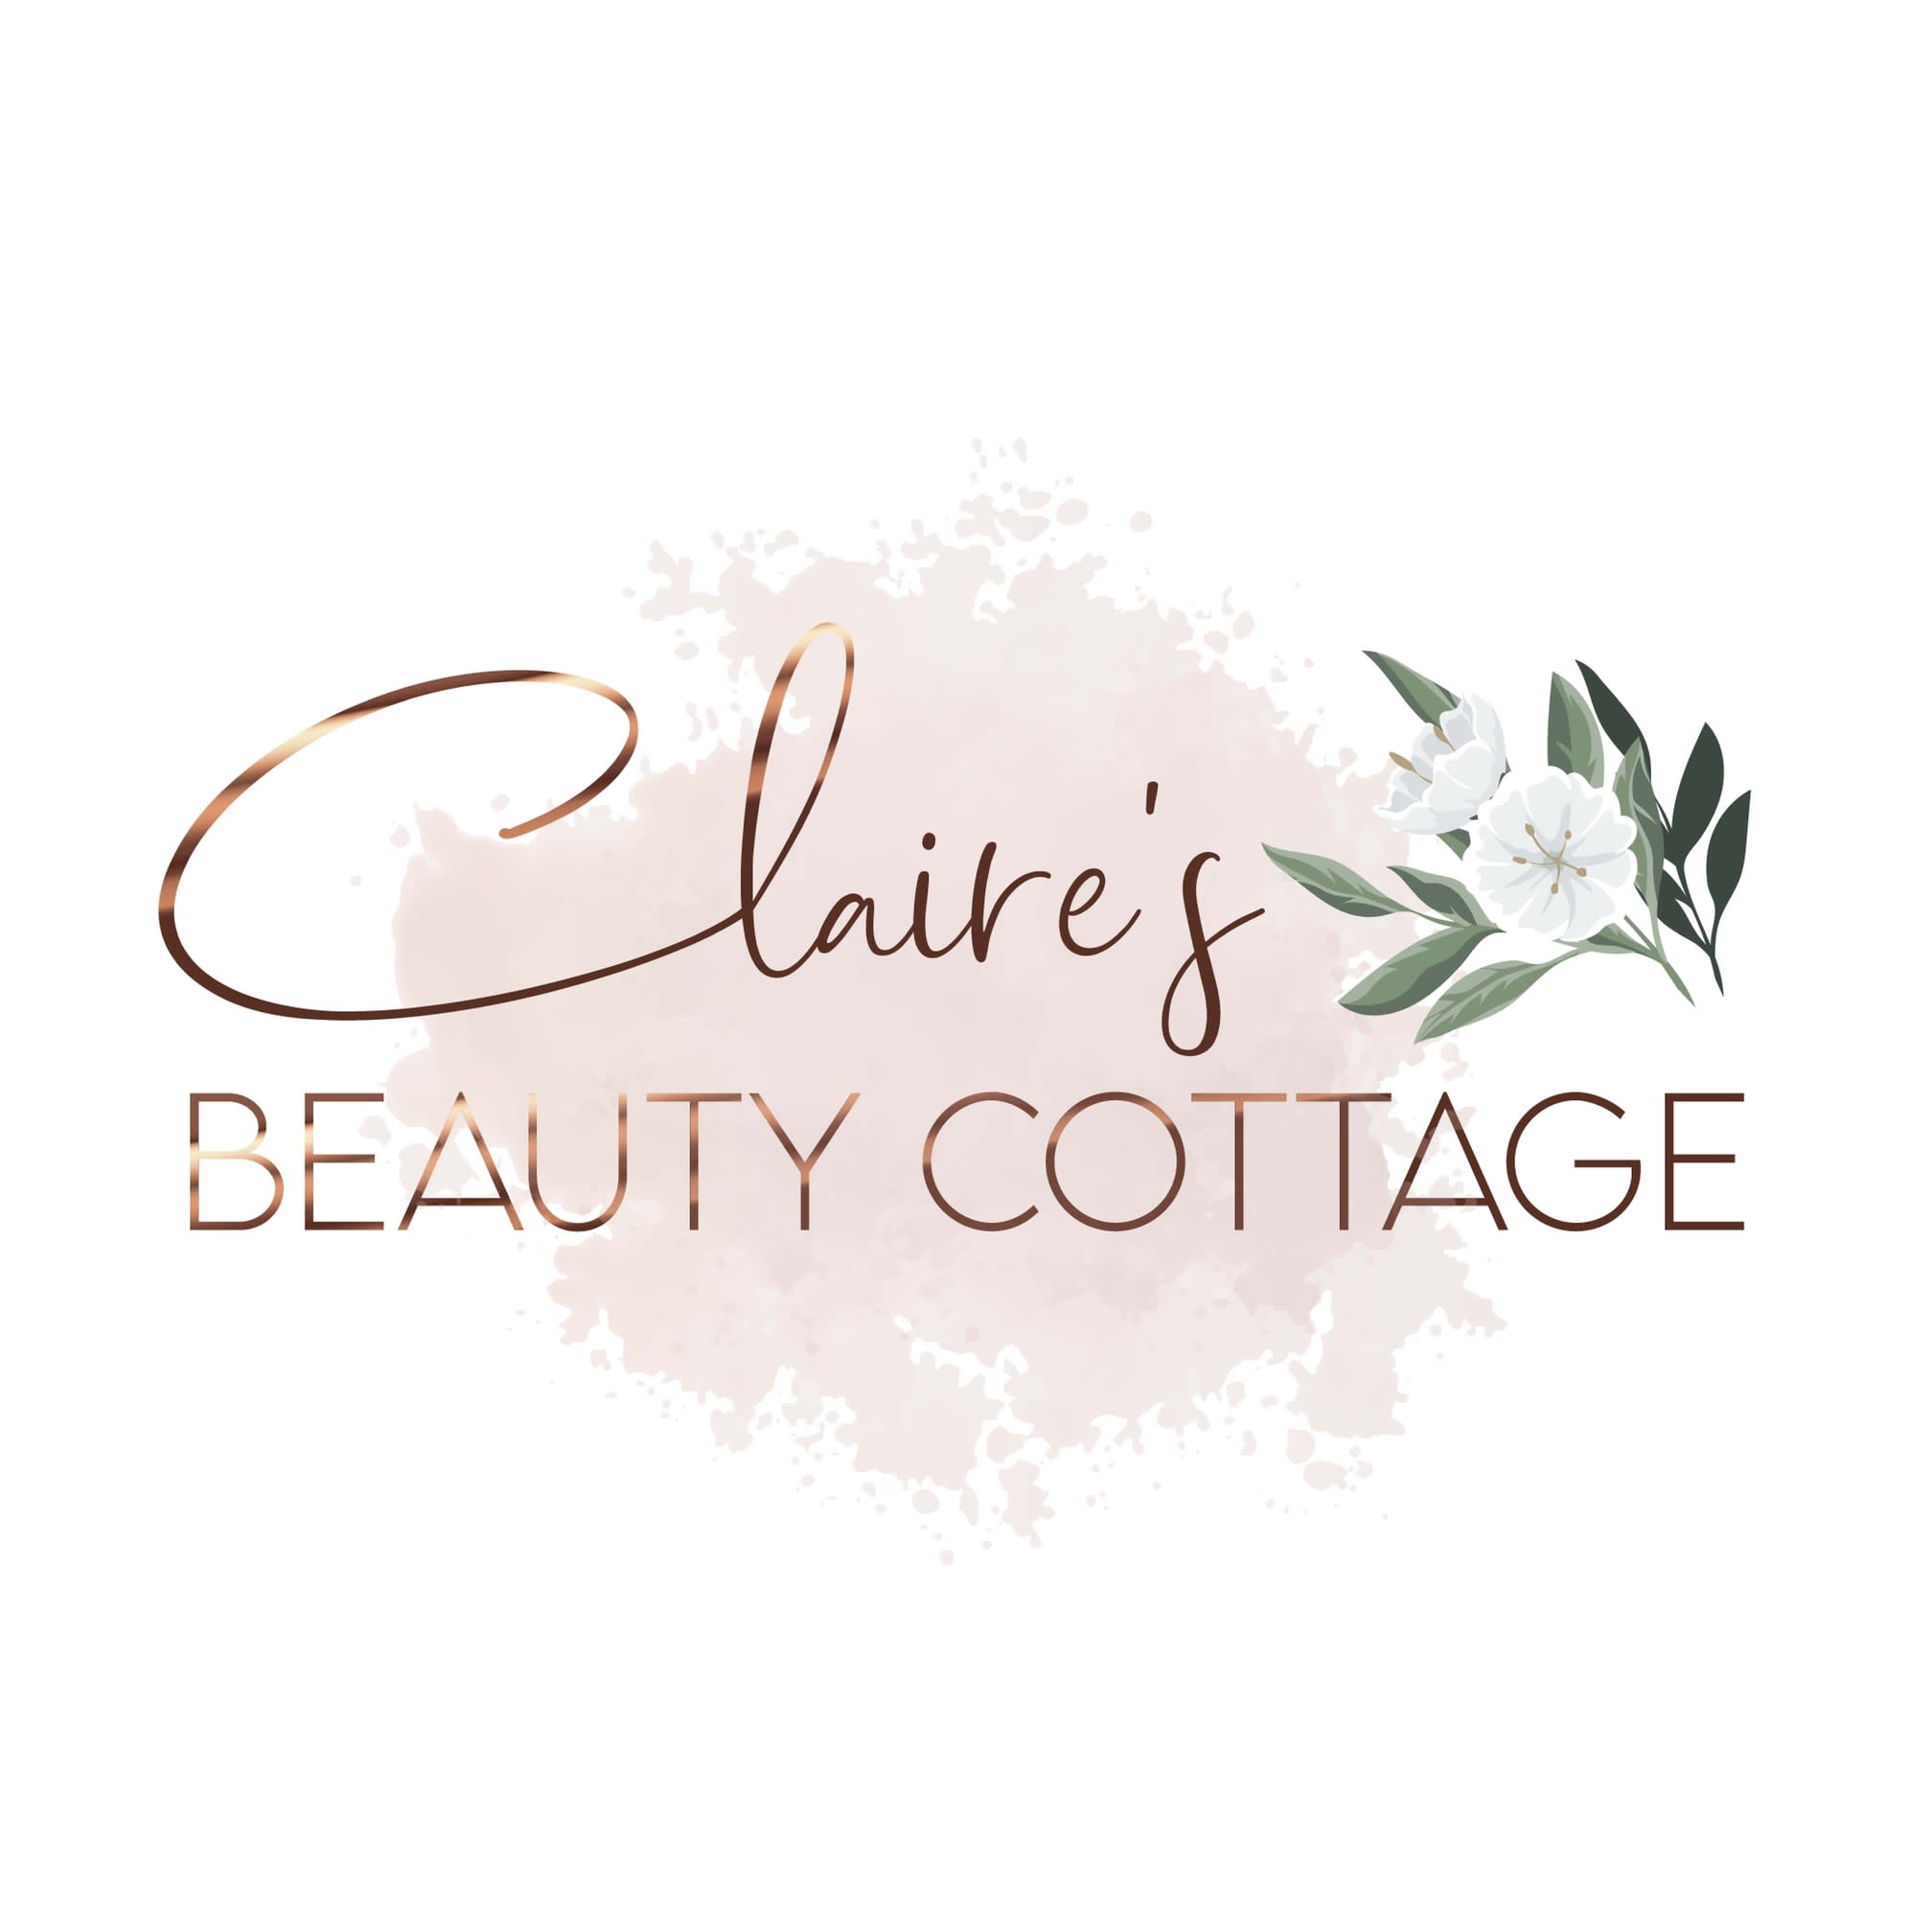 Images Claire's Beauty Cottage